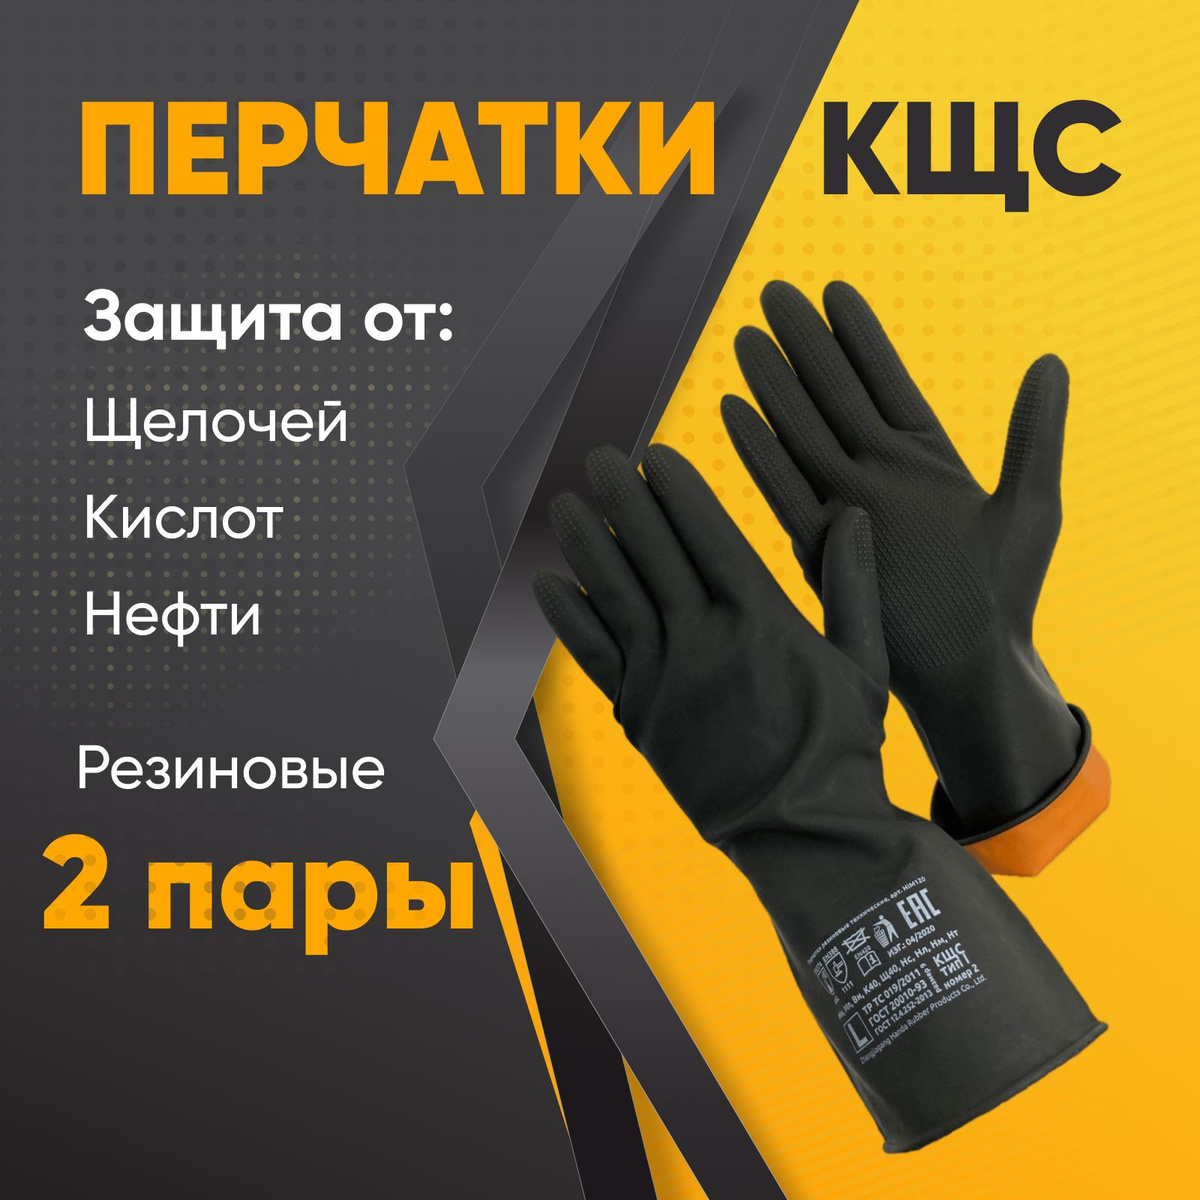 Усиленные резиновые технические перчатки для работы в кислотно-щелочной среде с улучшенными свойствами